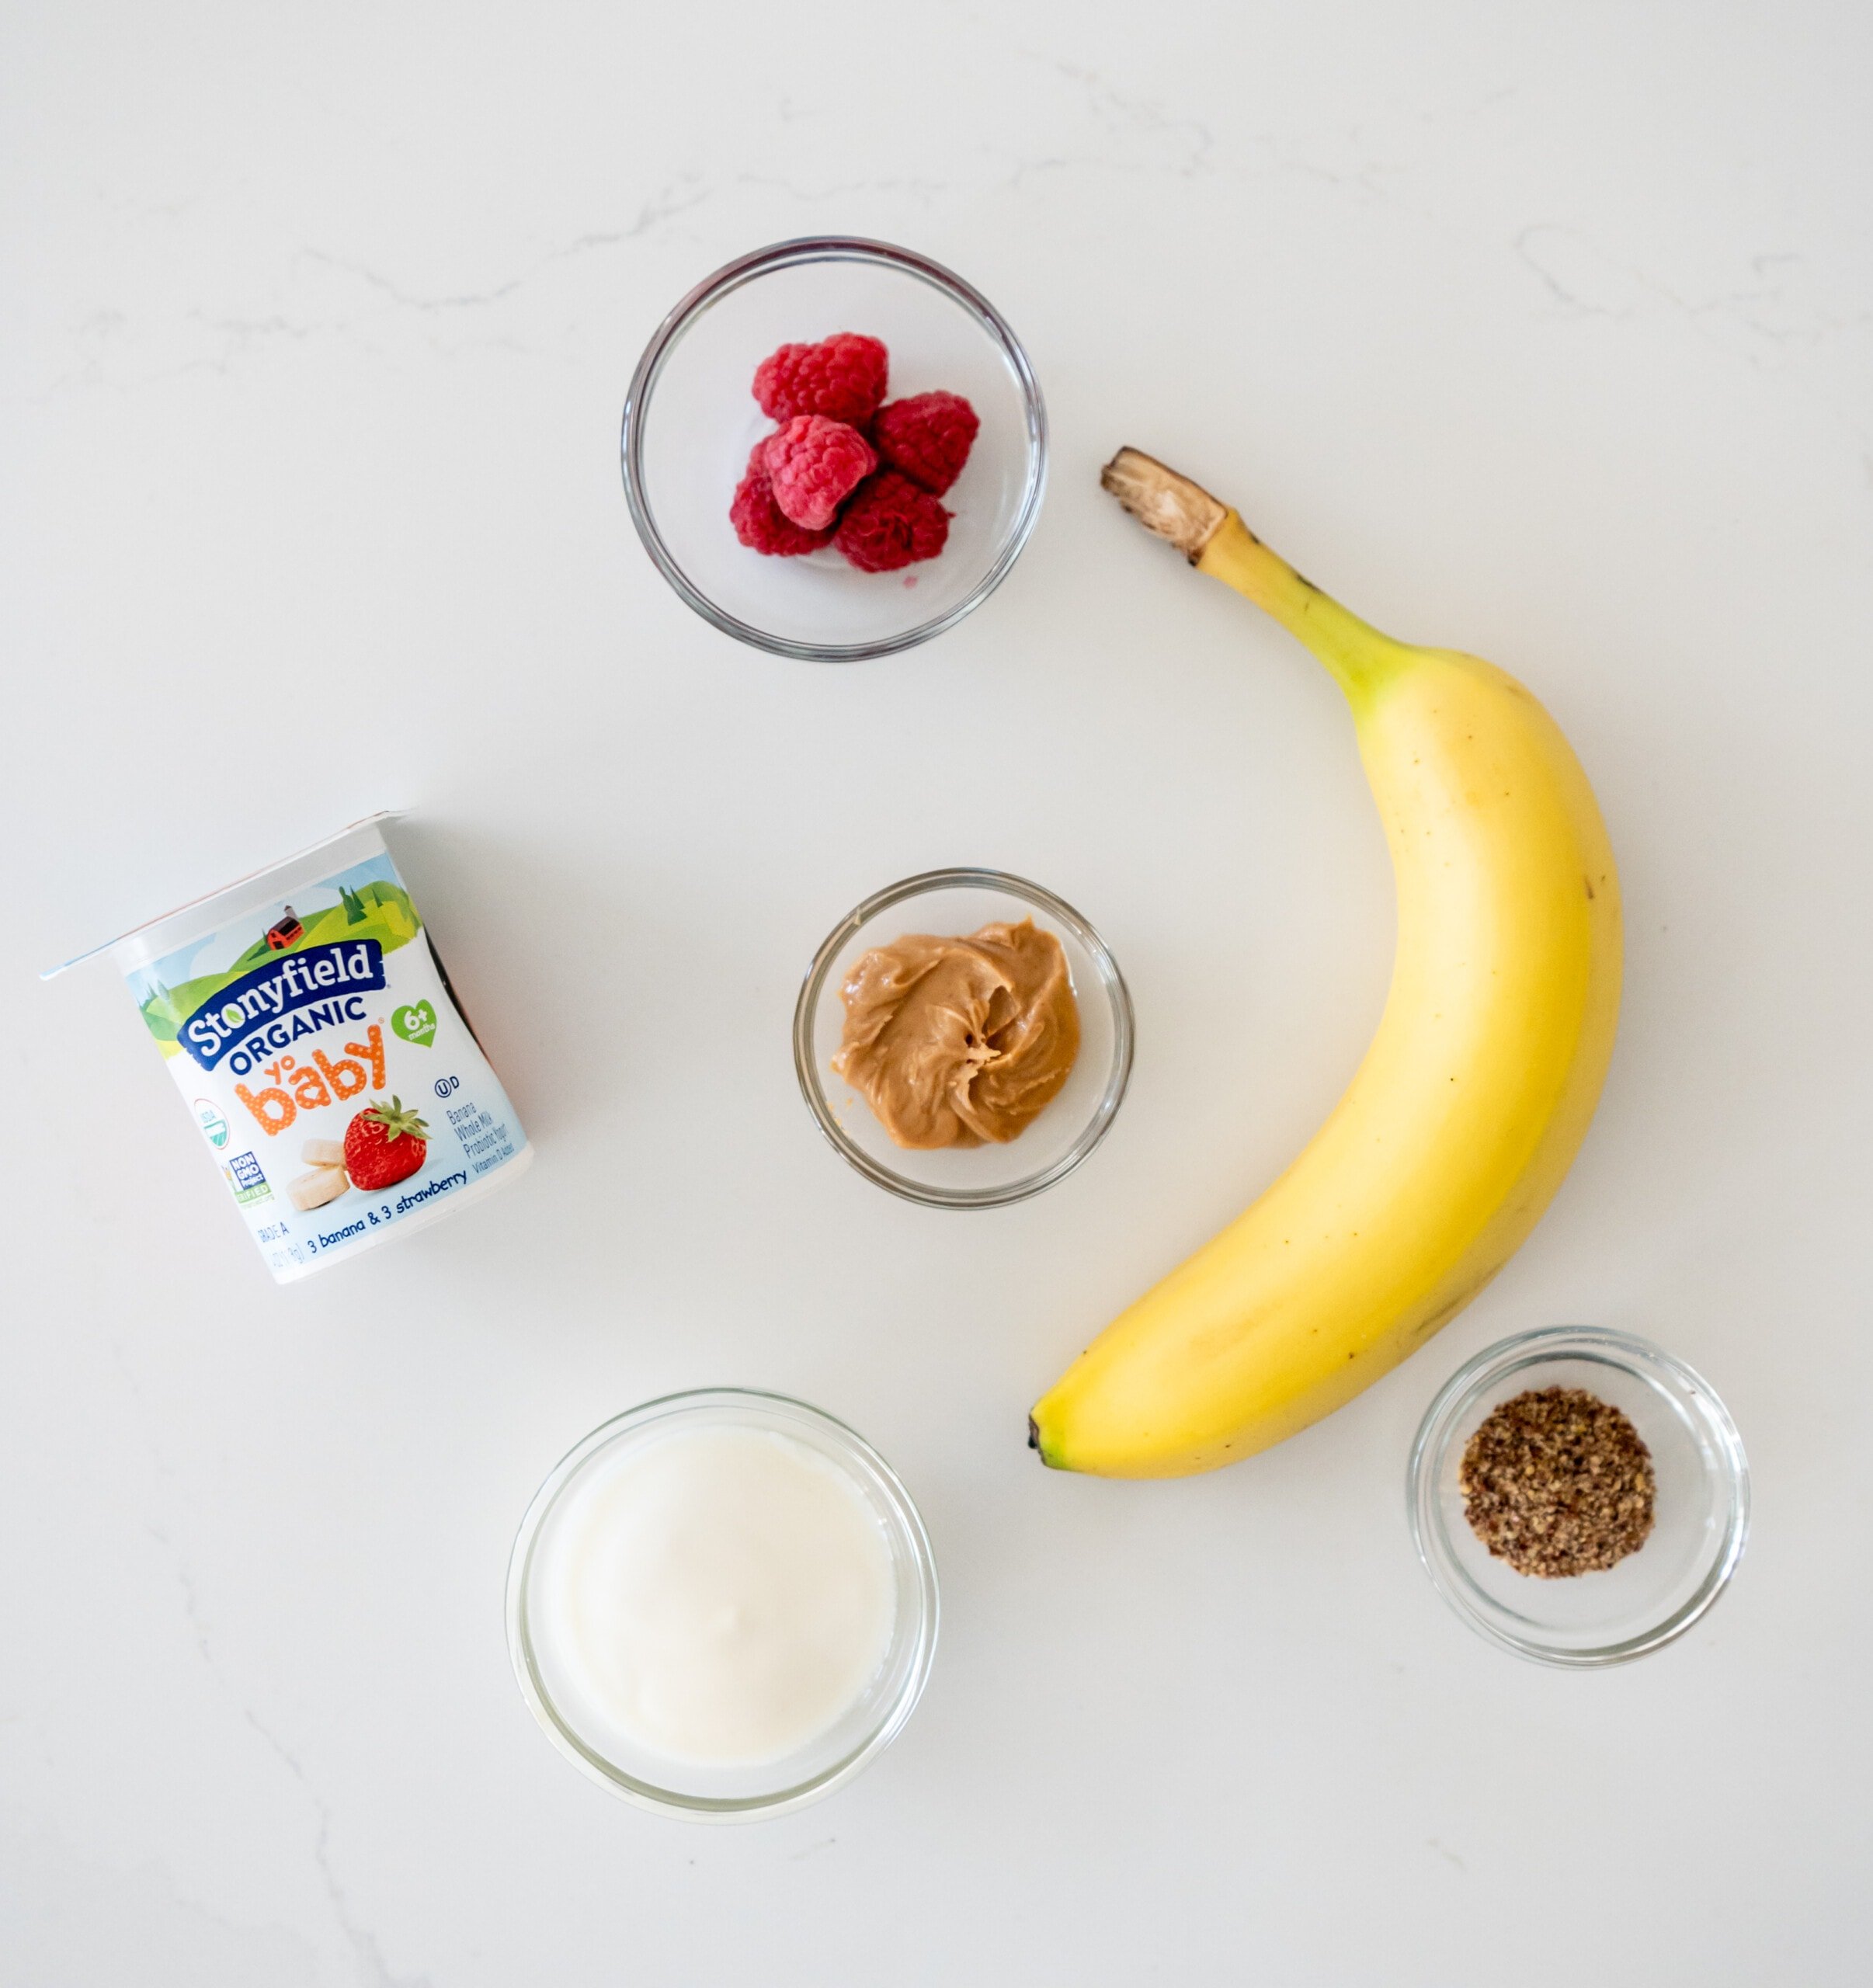 Ingredients for pressed banana yogurt bites